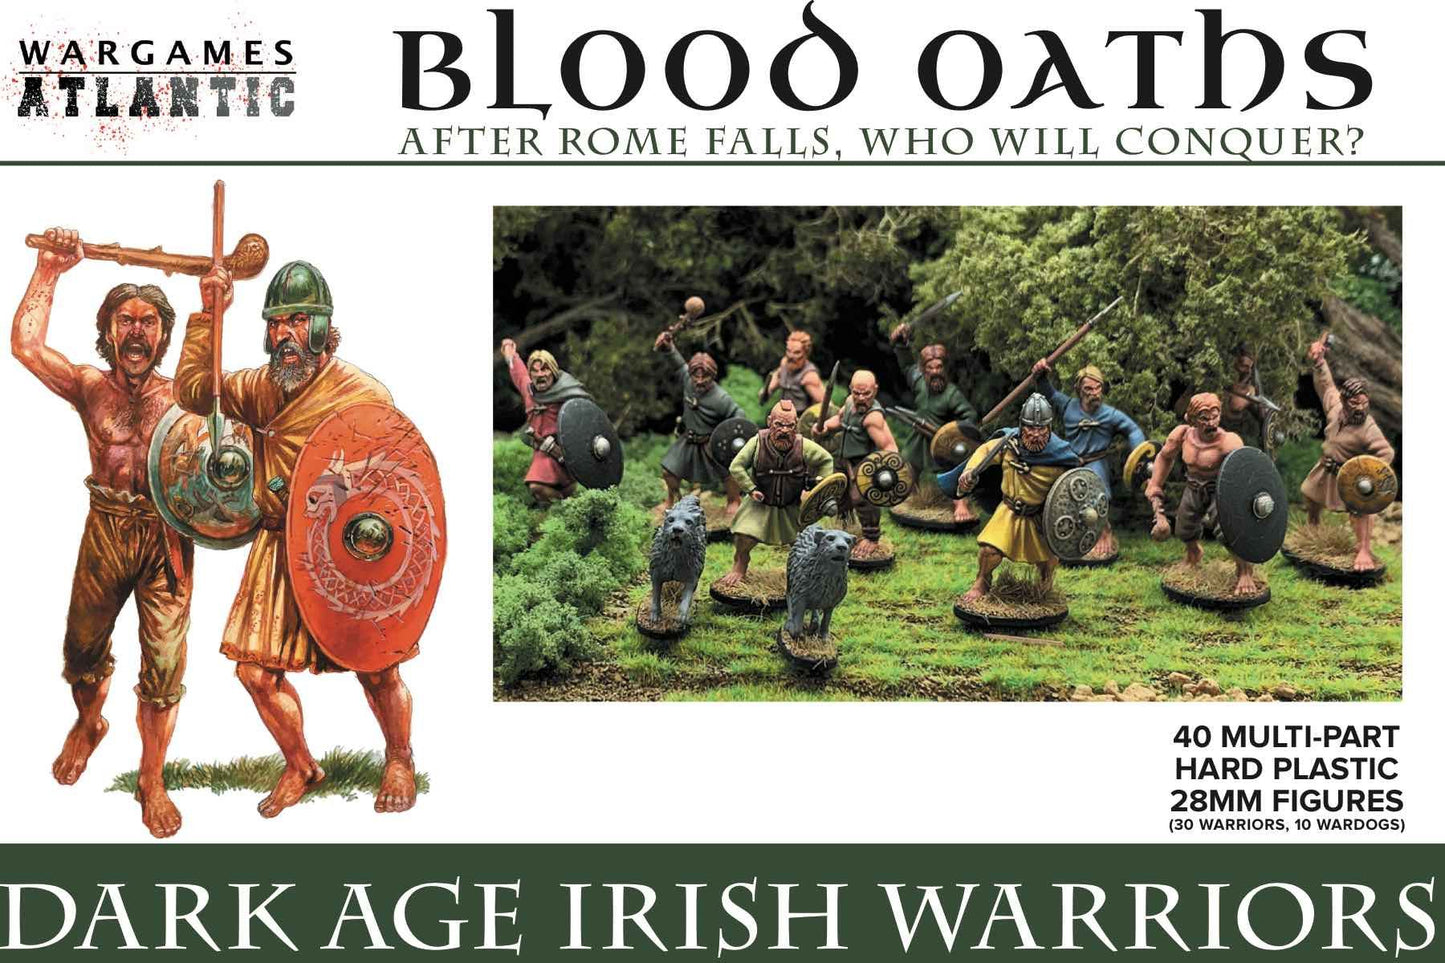 Wargames Atlantic WAABO001 Dark Age Irish Warriors 28mm